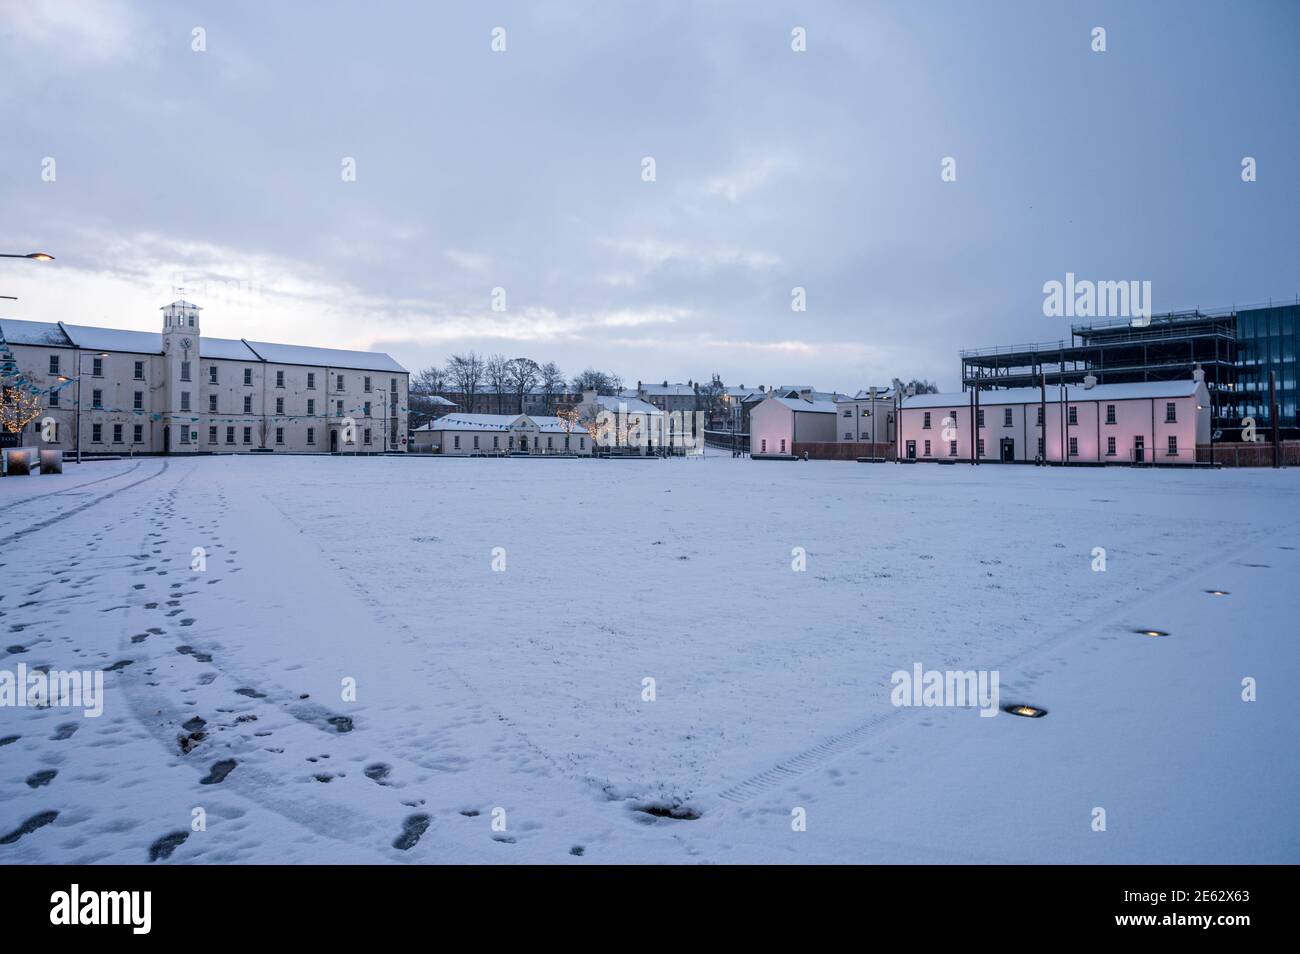 Derry, Norther Irlanda - 22 gennaio 2021: Ebrington Square con la neve in inverno Foto Stock